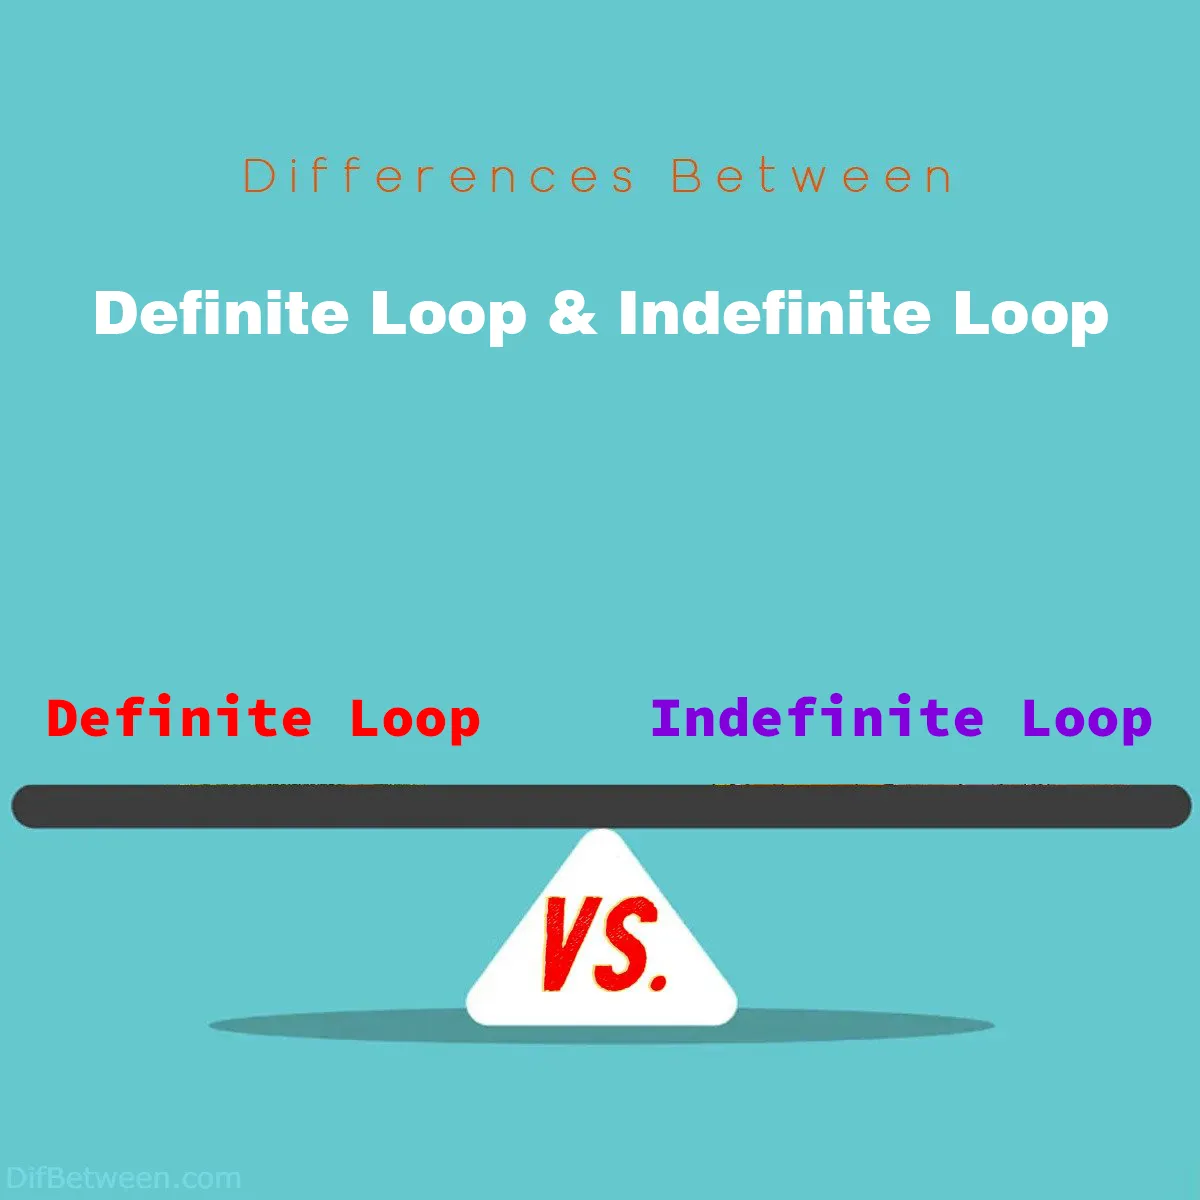 Differences Between Definite Loop and Indefinite Loop